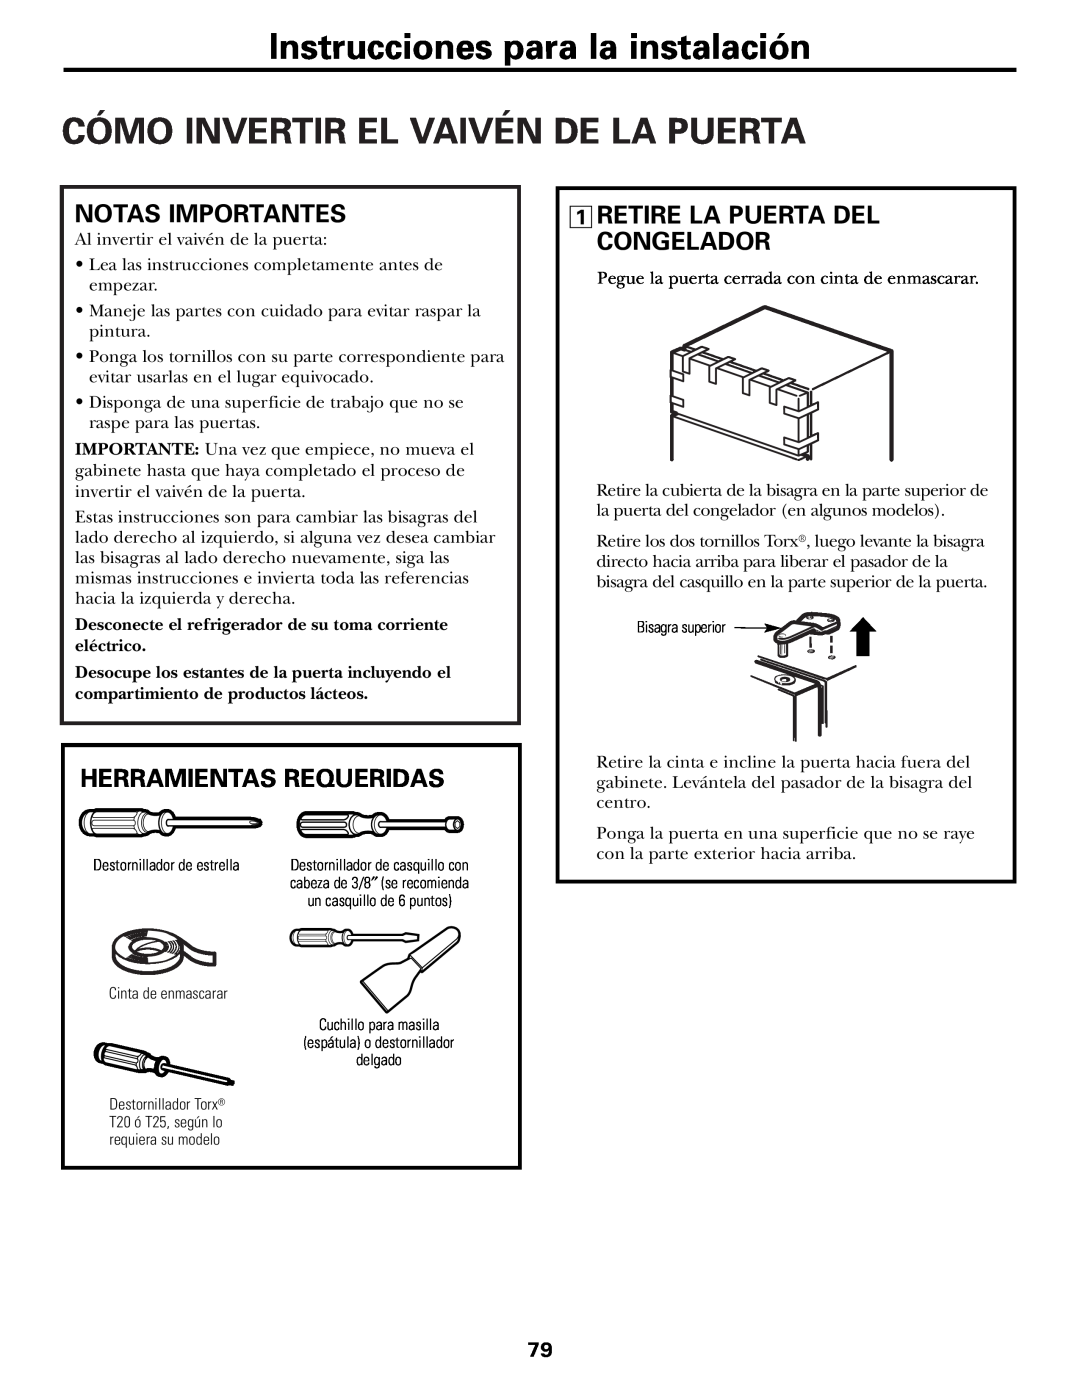 GE 197D3354P003 installation instructions Cómo Invertir El Vaivén De La Puerta, Notas Importantes, Herramientas Requeridas 